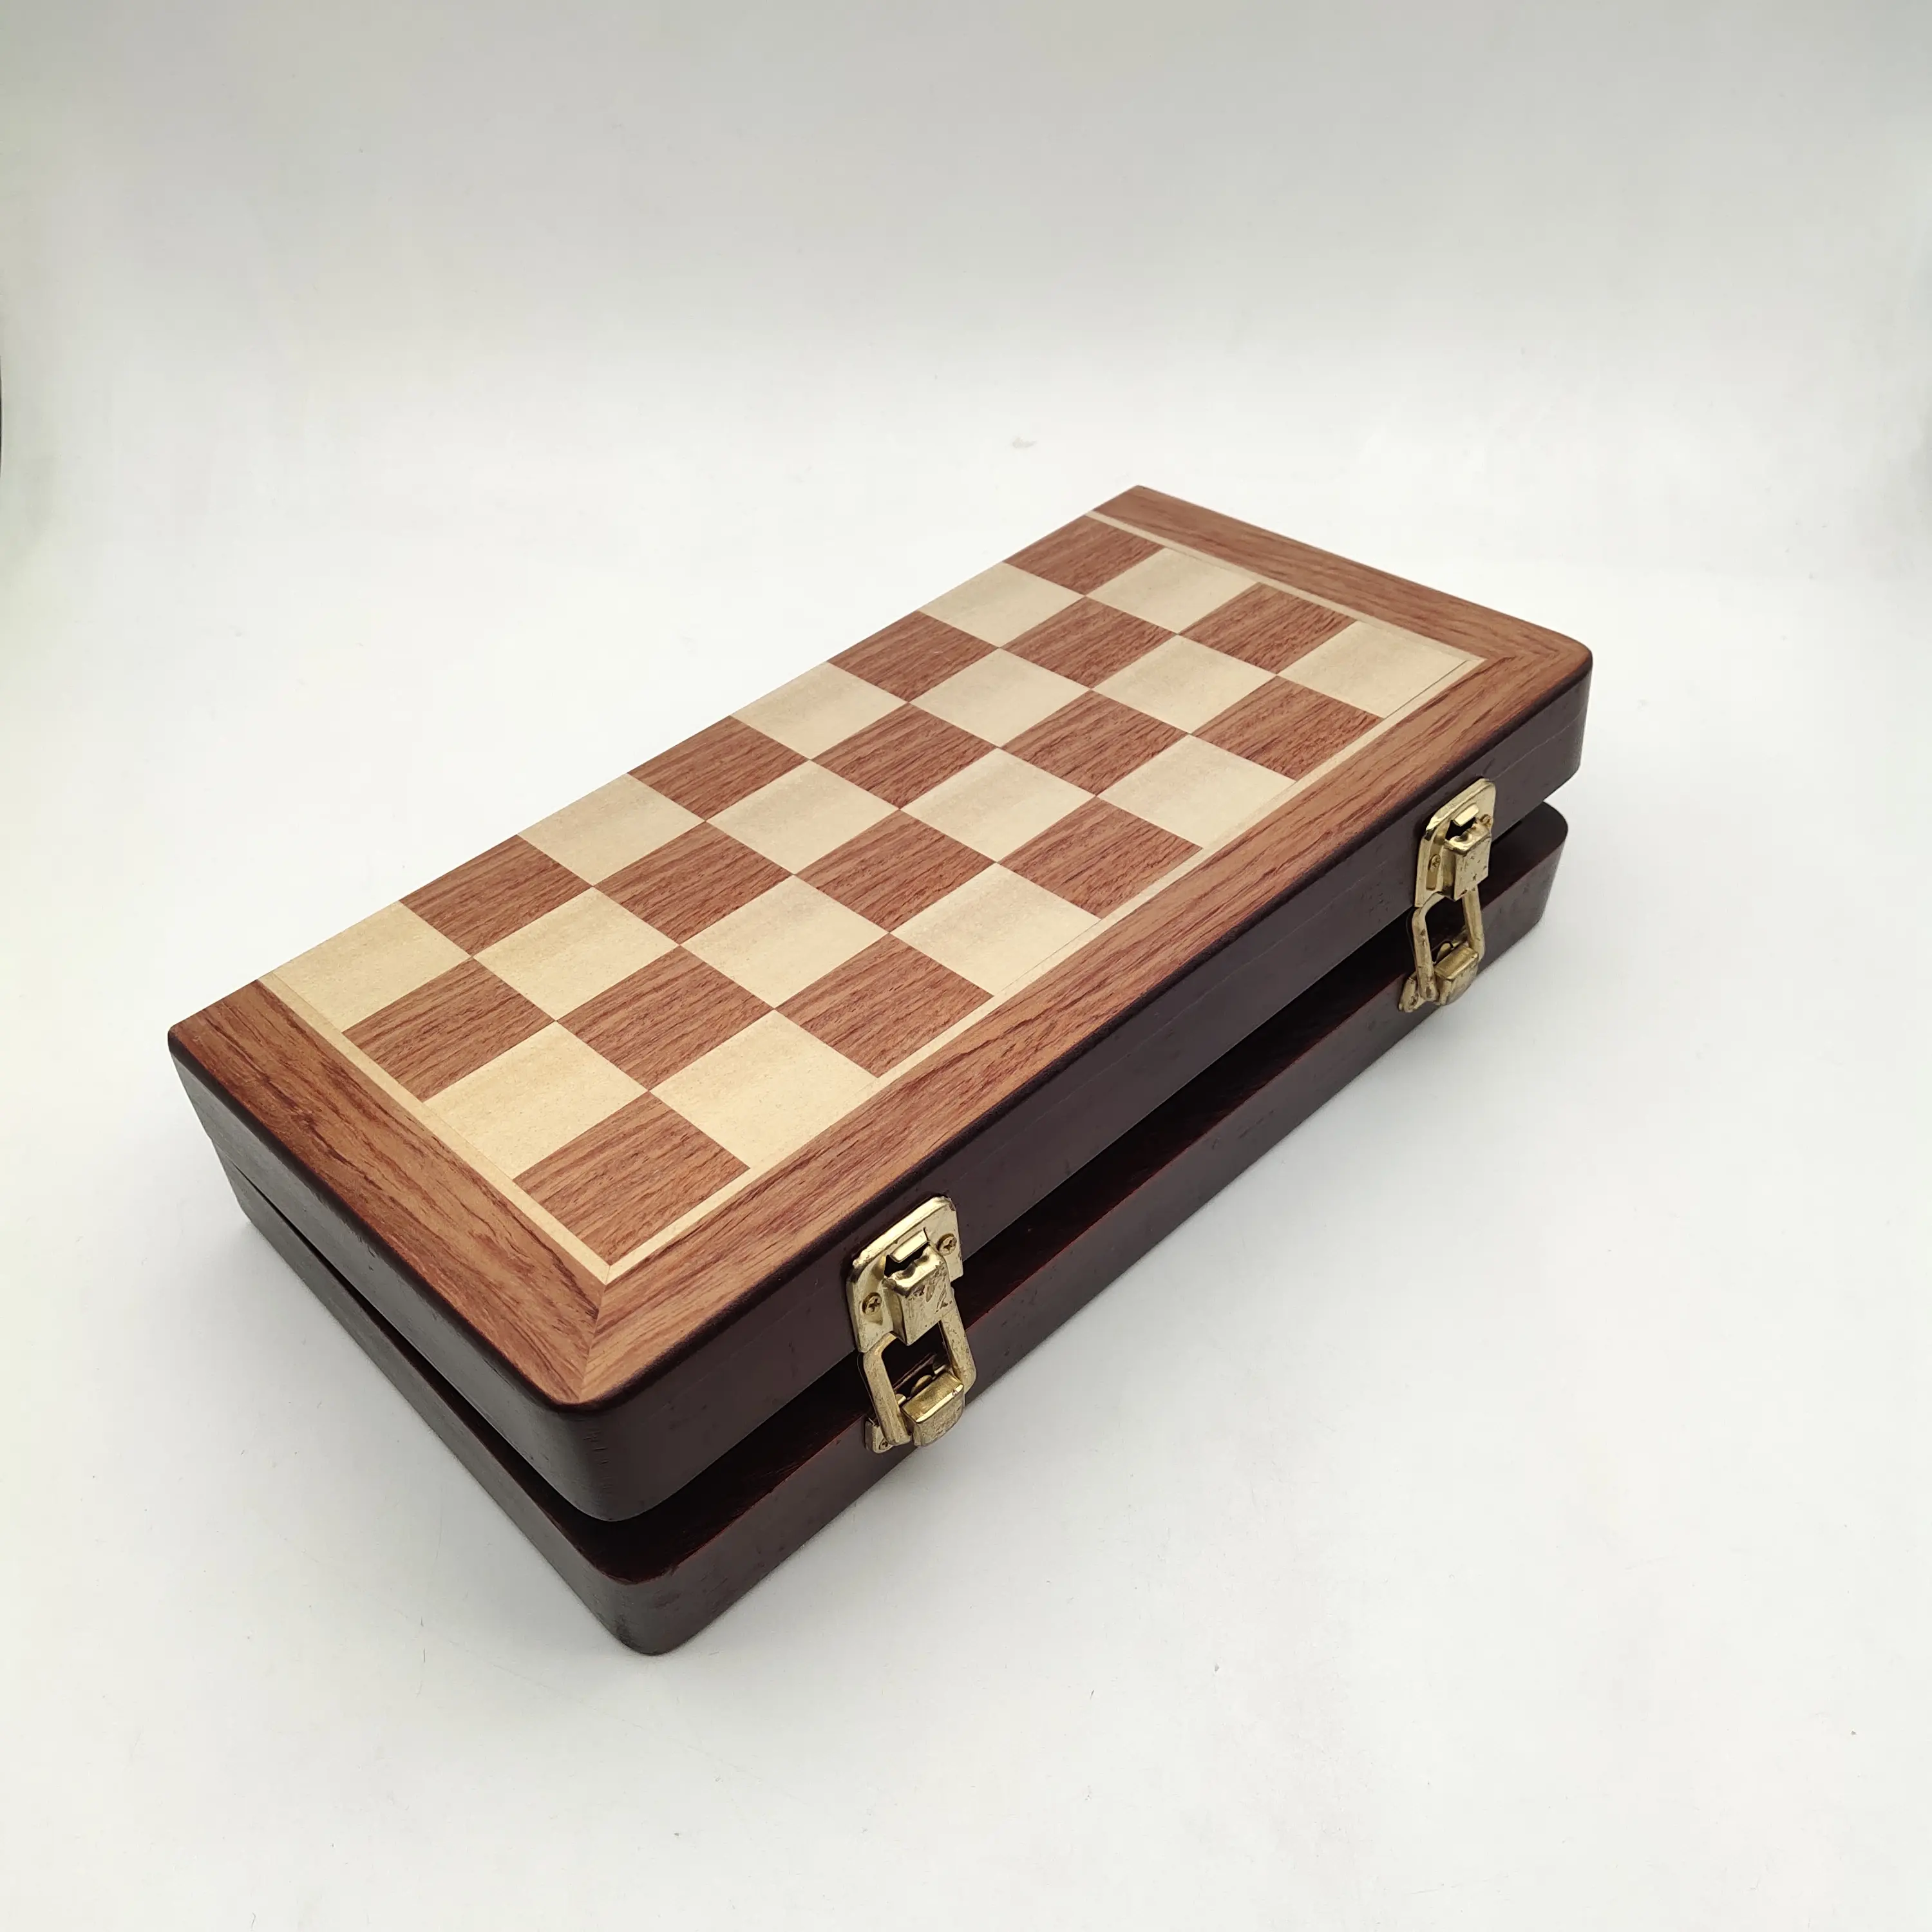 Holz schachfiguren Porzellan Schachspiel mit Brett